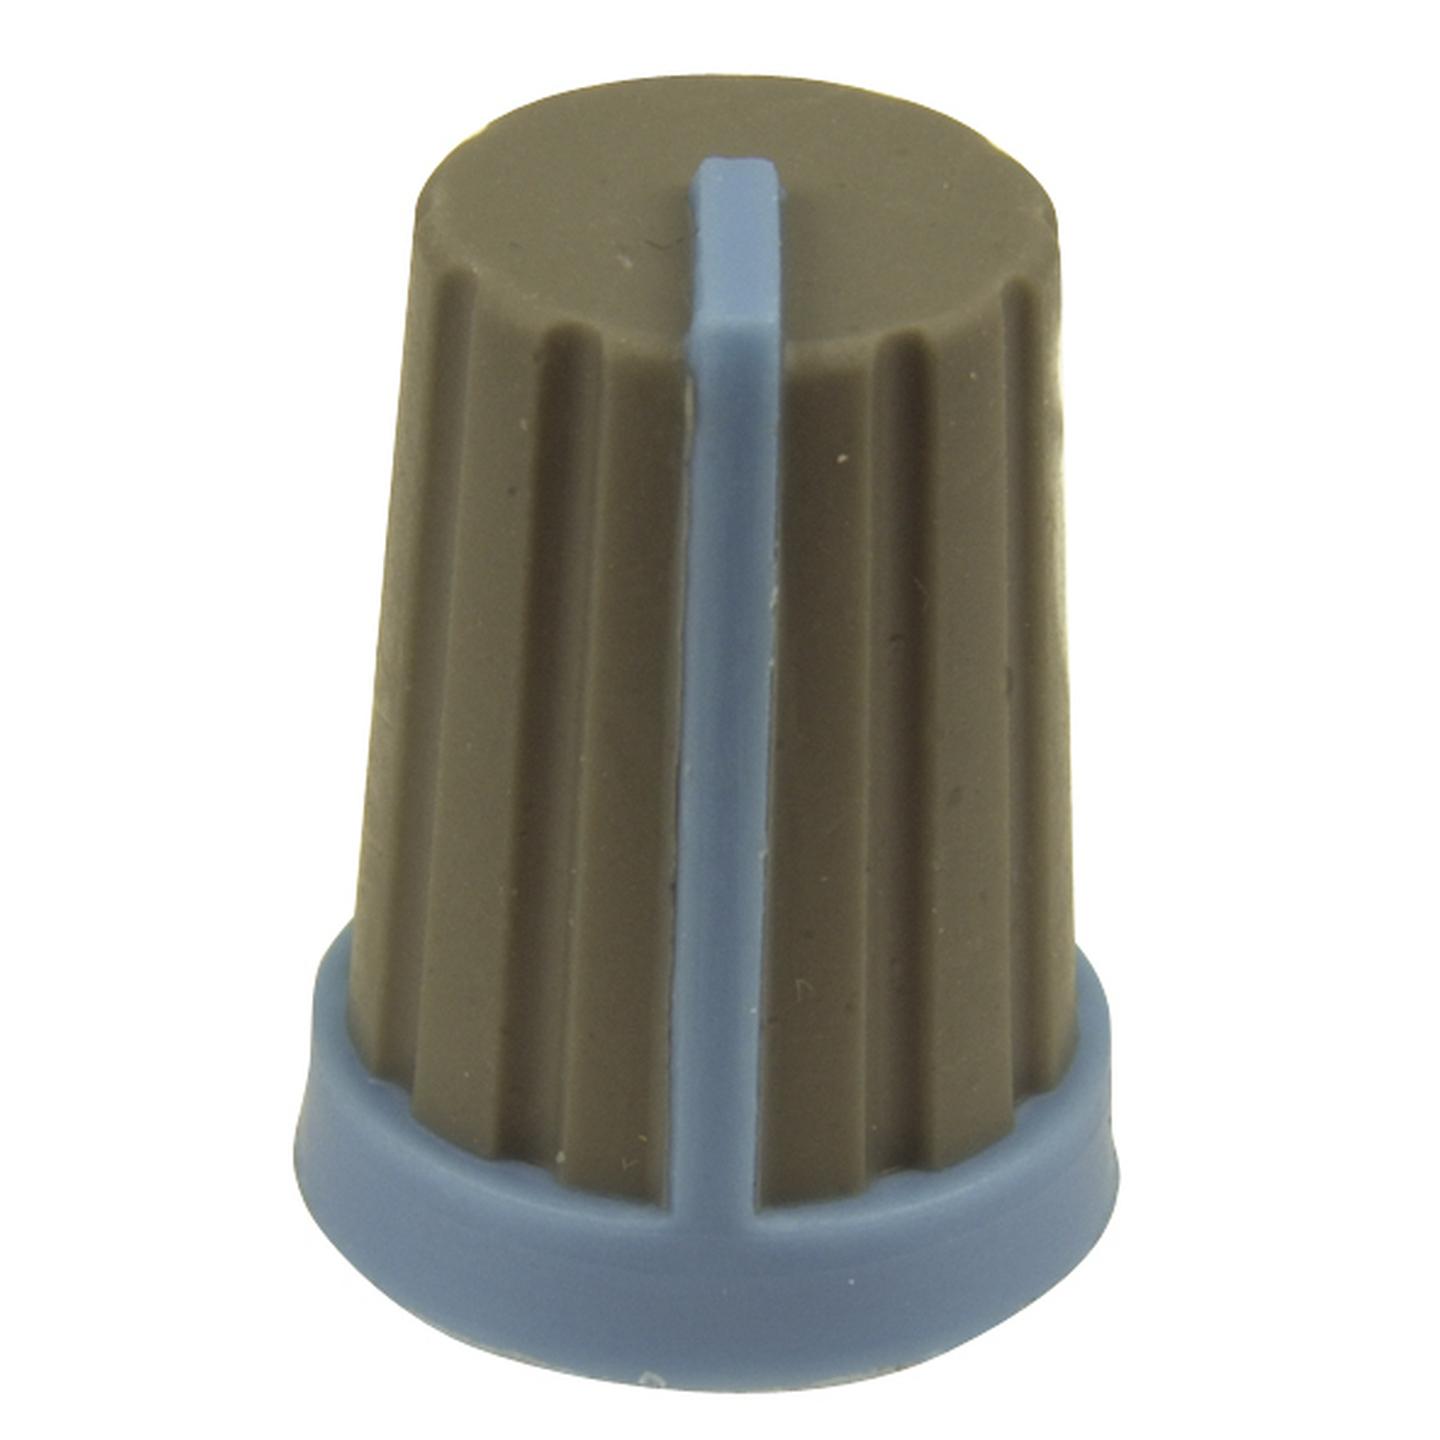 Knob Plastic Push On 18T Spline Gry/Blu